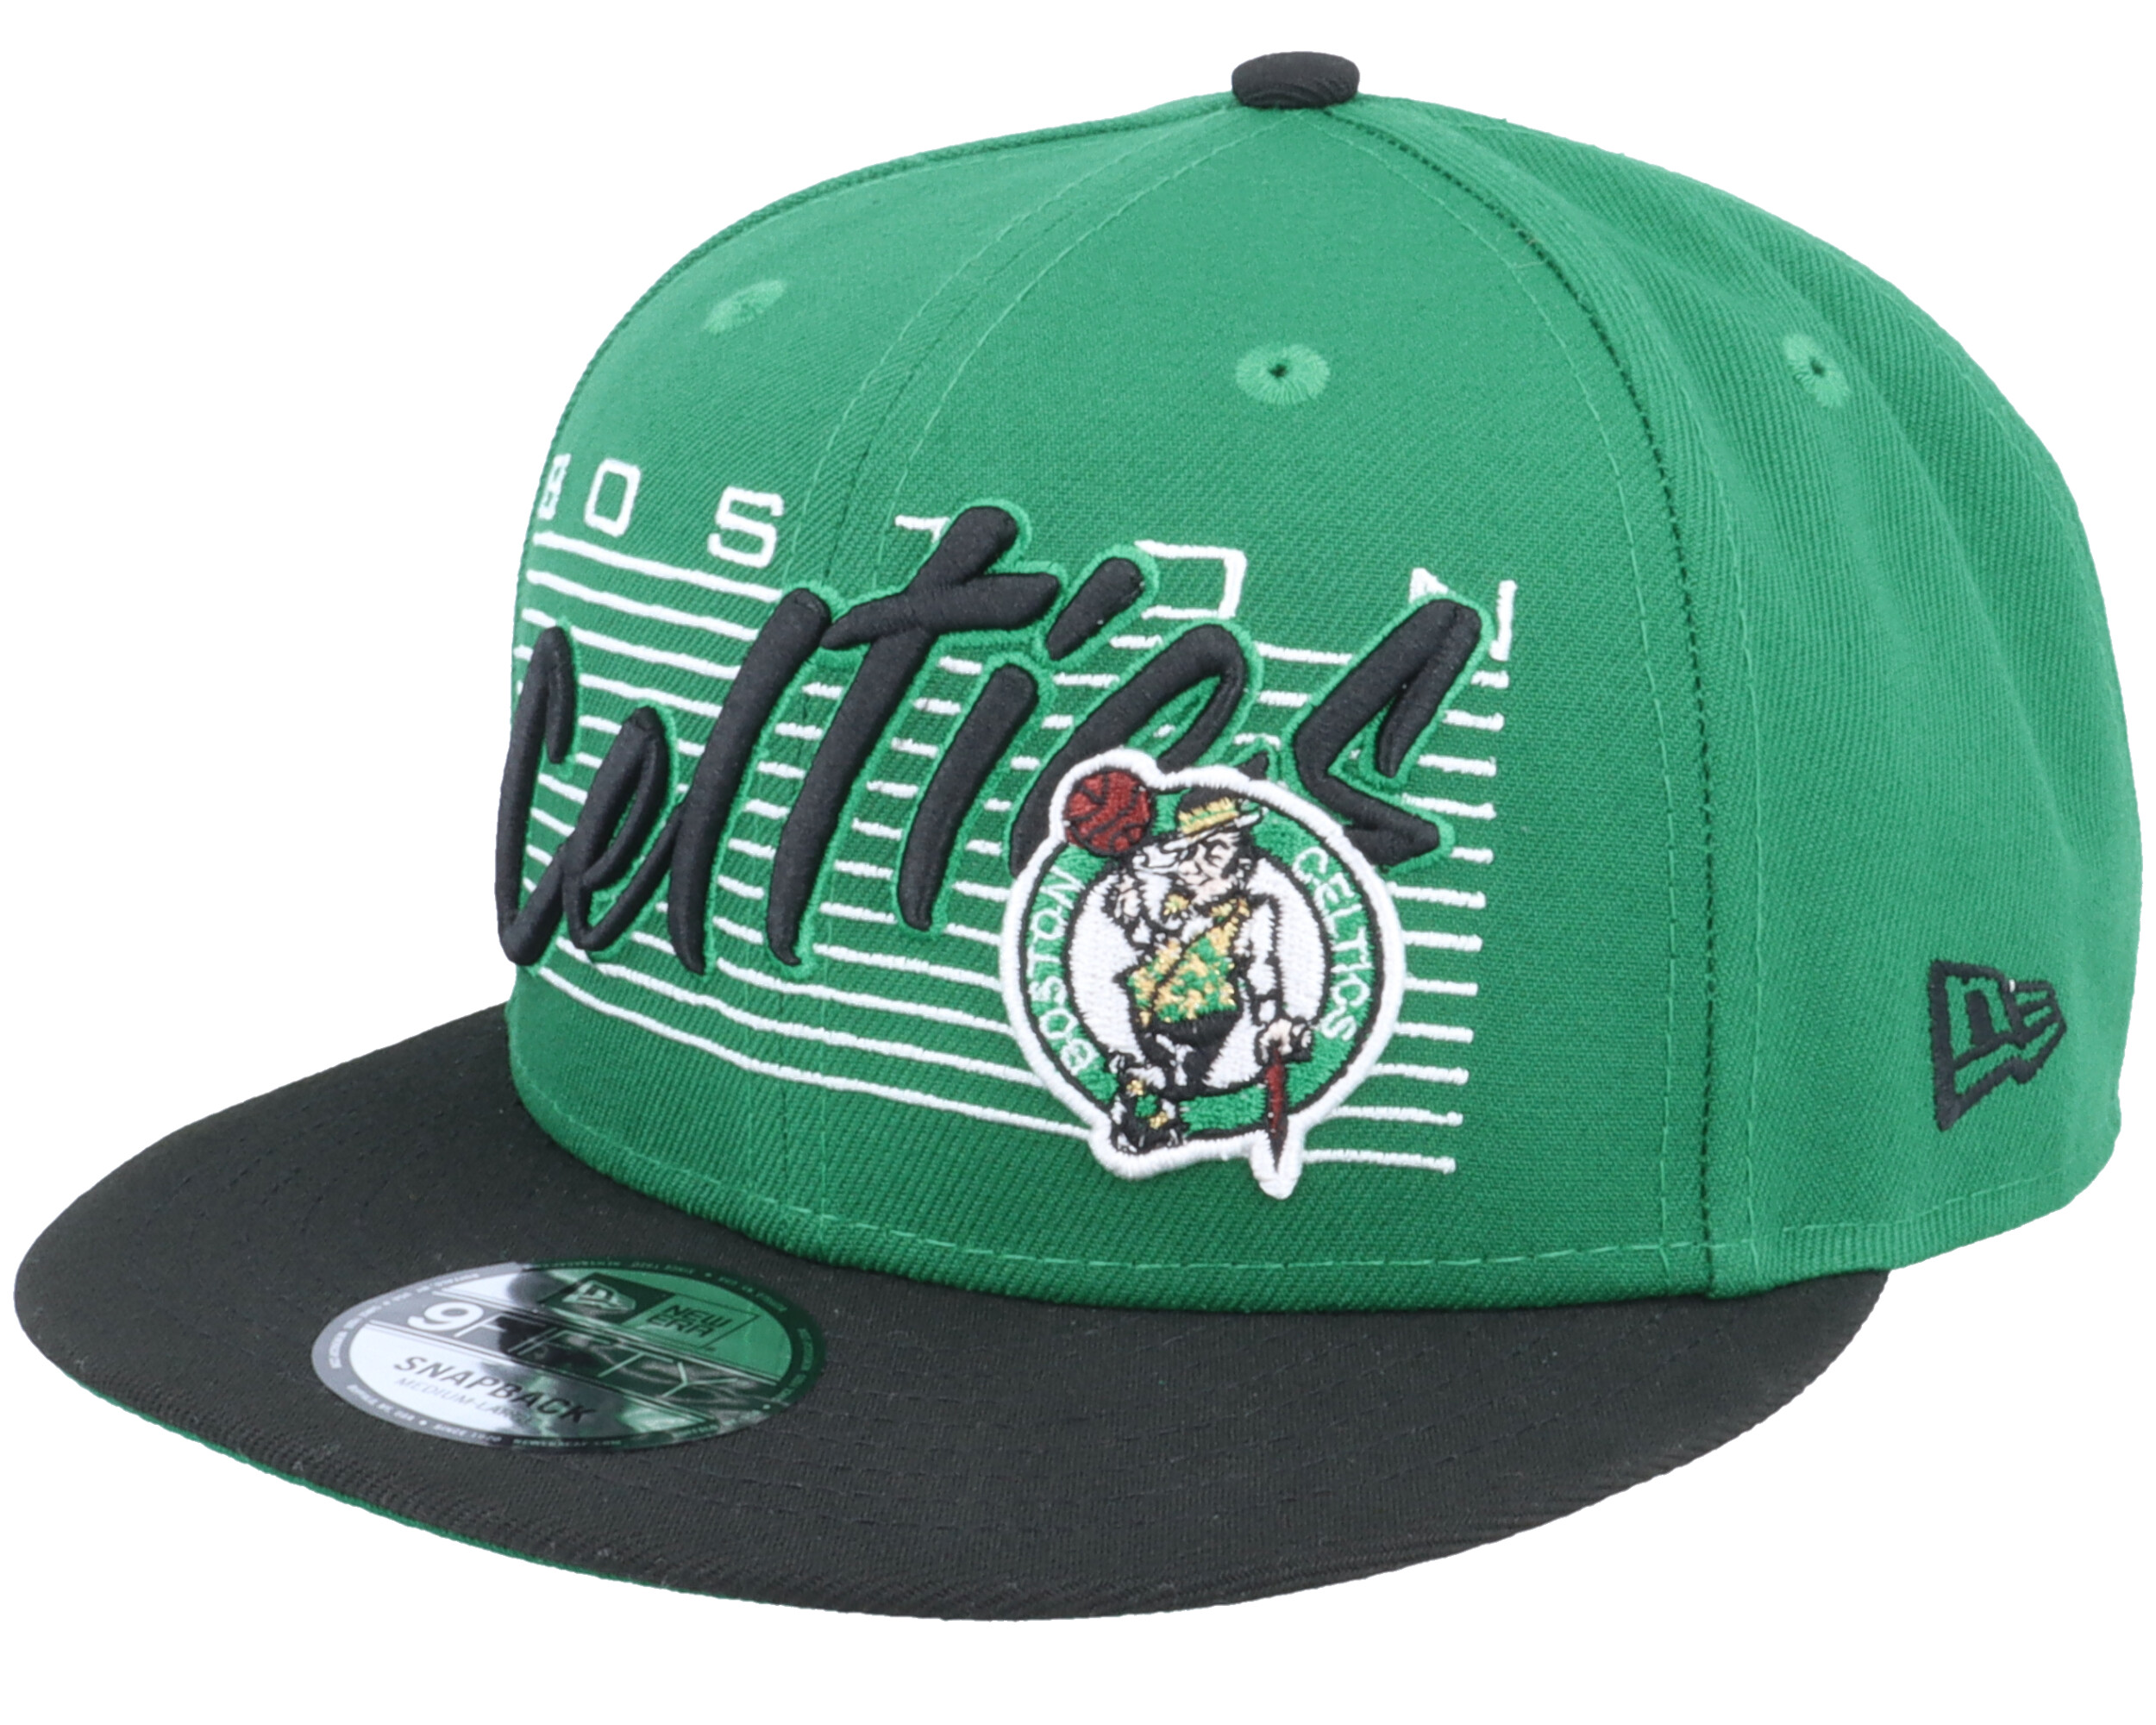 Boston Celtics Team Wordmark 9FIFTY Green/Black Snapback New Era cap